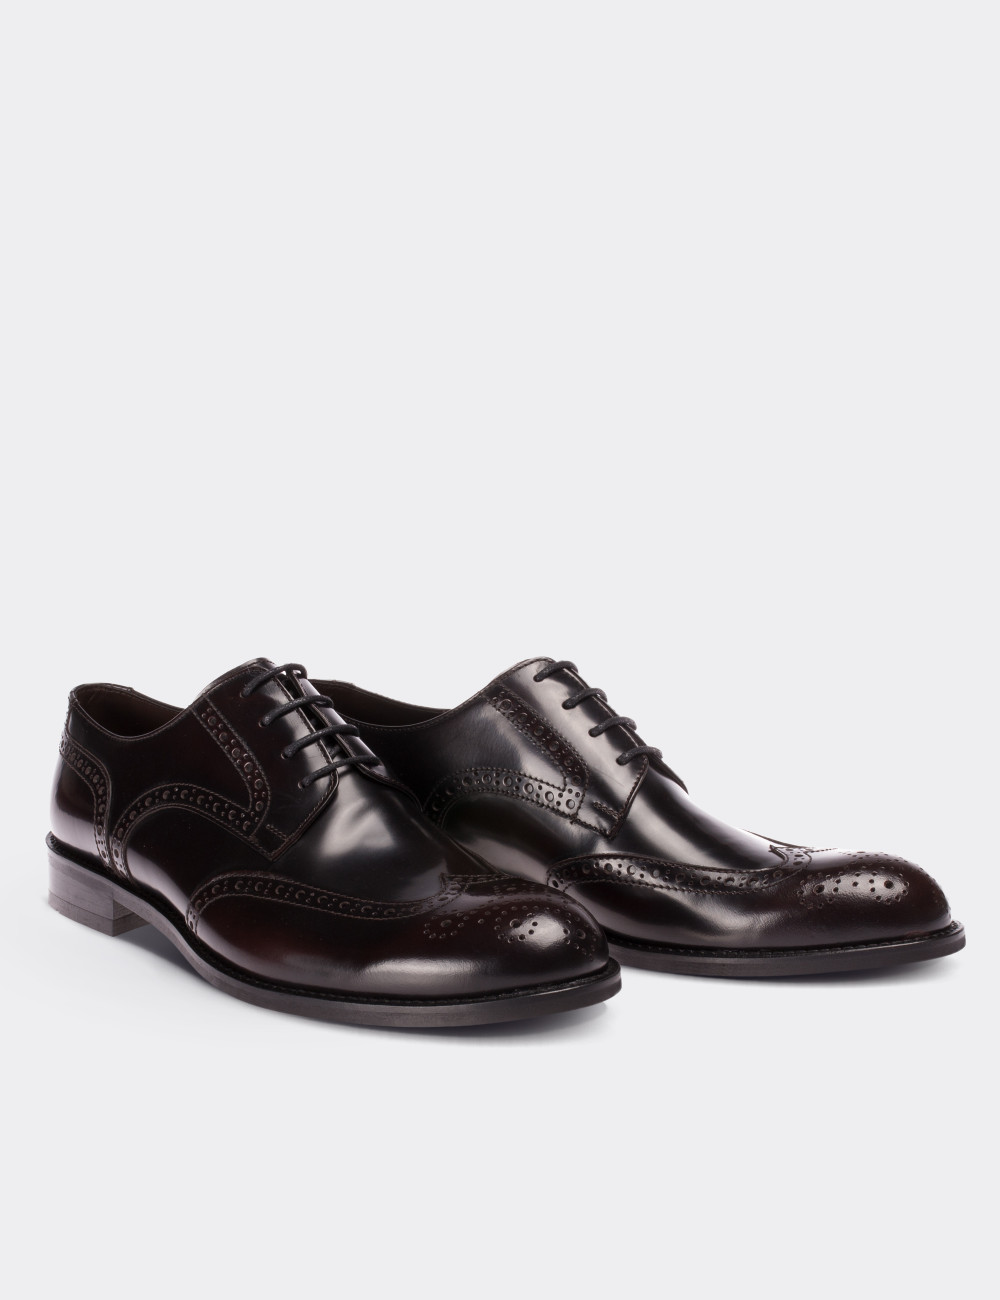 Hakiki Deri Bordo Klasik Oxford Erkek Ayakkabı - 01696MBRDM01